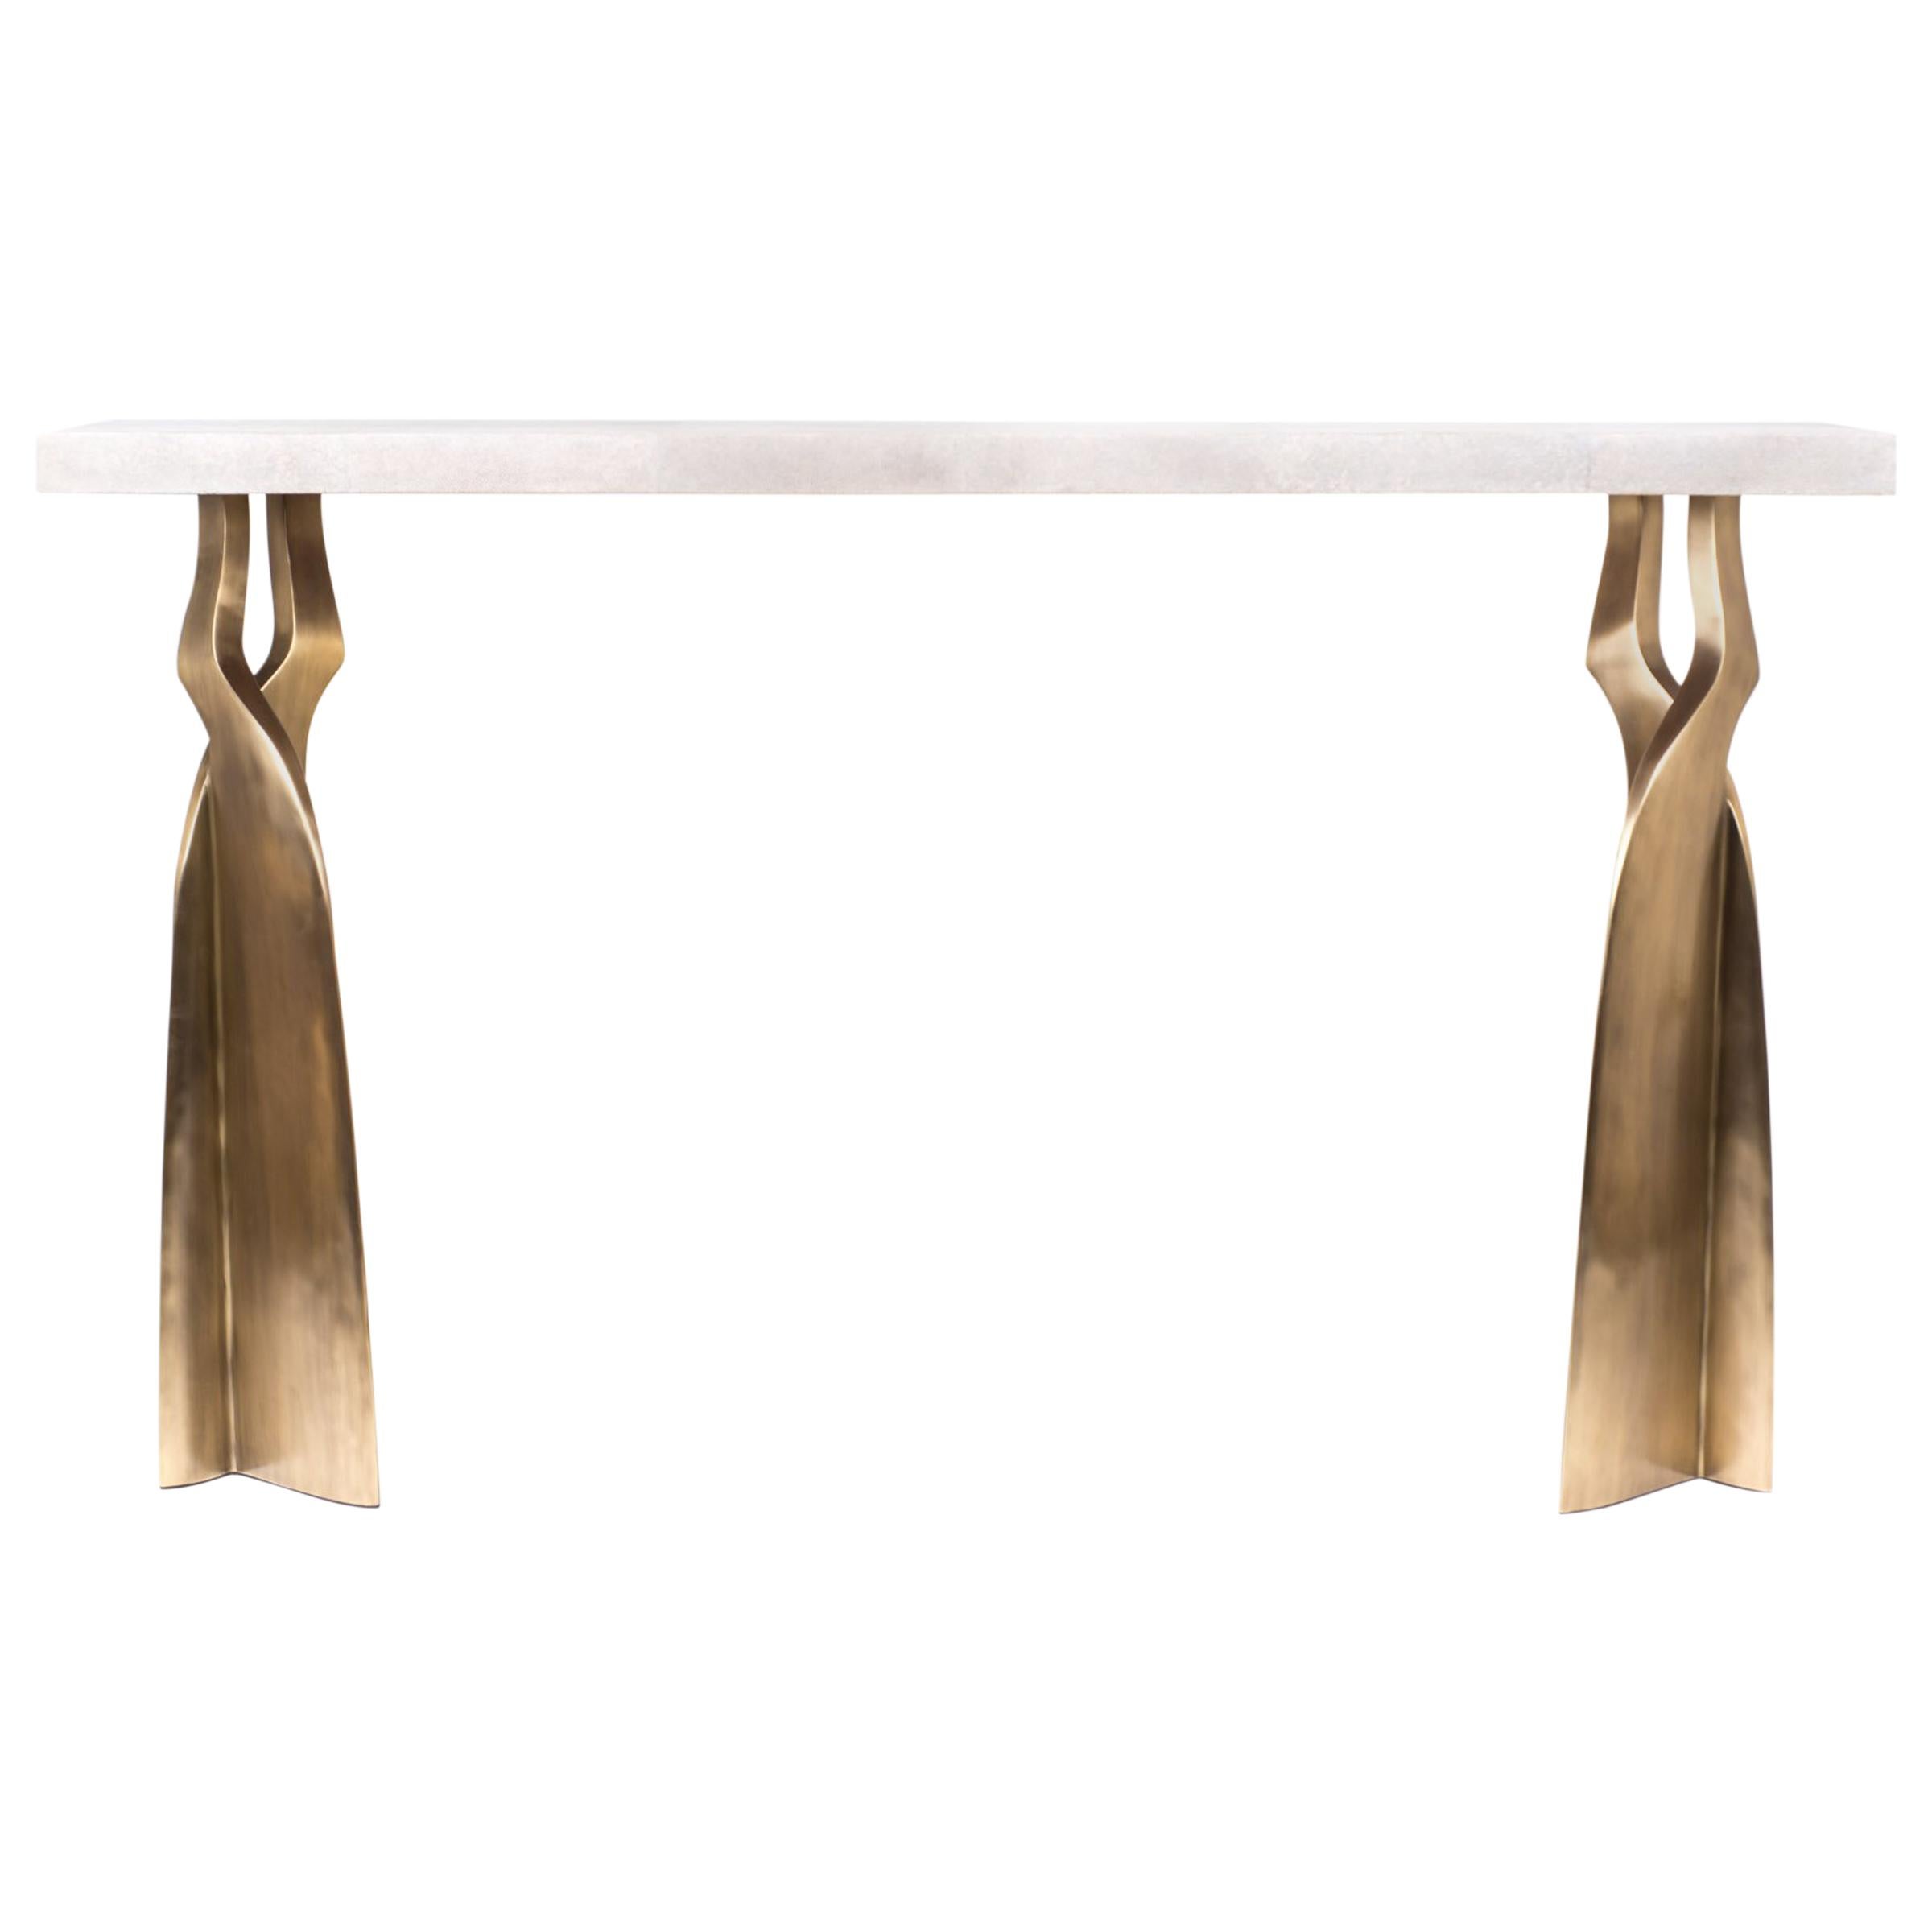 La table console Chital est à la fois spectaculaire et organique grâce à son design unique. Le plateau incrusté de galuchat pourpre repose sur une paire de pieds éthérés et sculpturaux en laiton bronze-patina. Cette pièce est conçue par Kifu